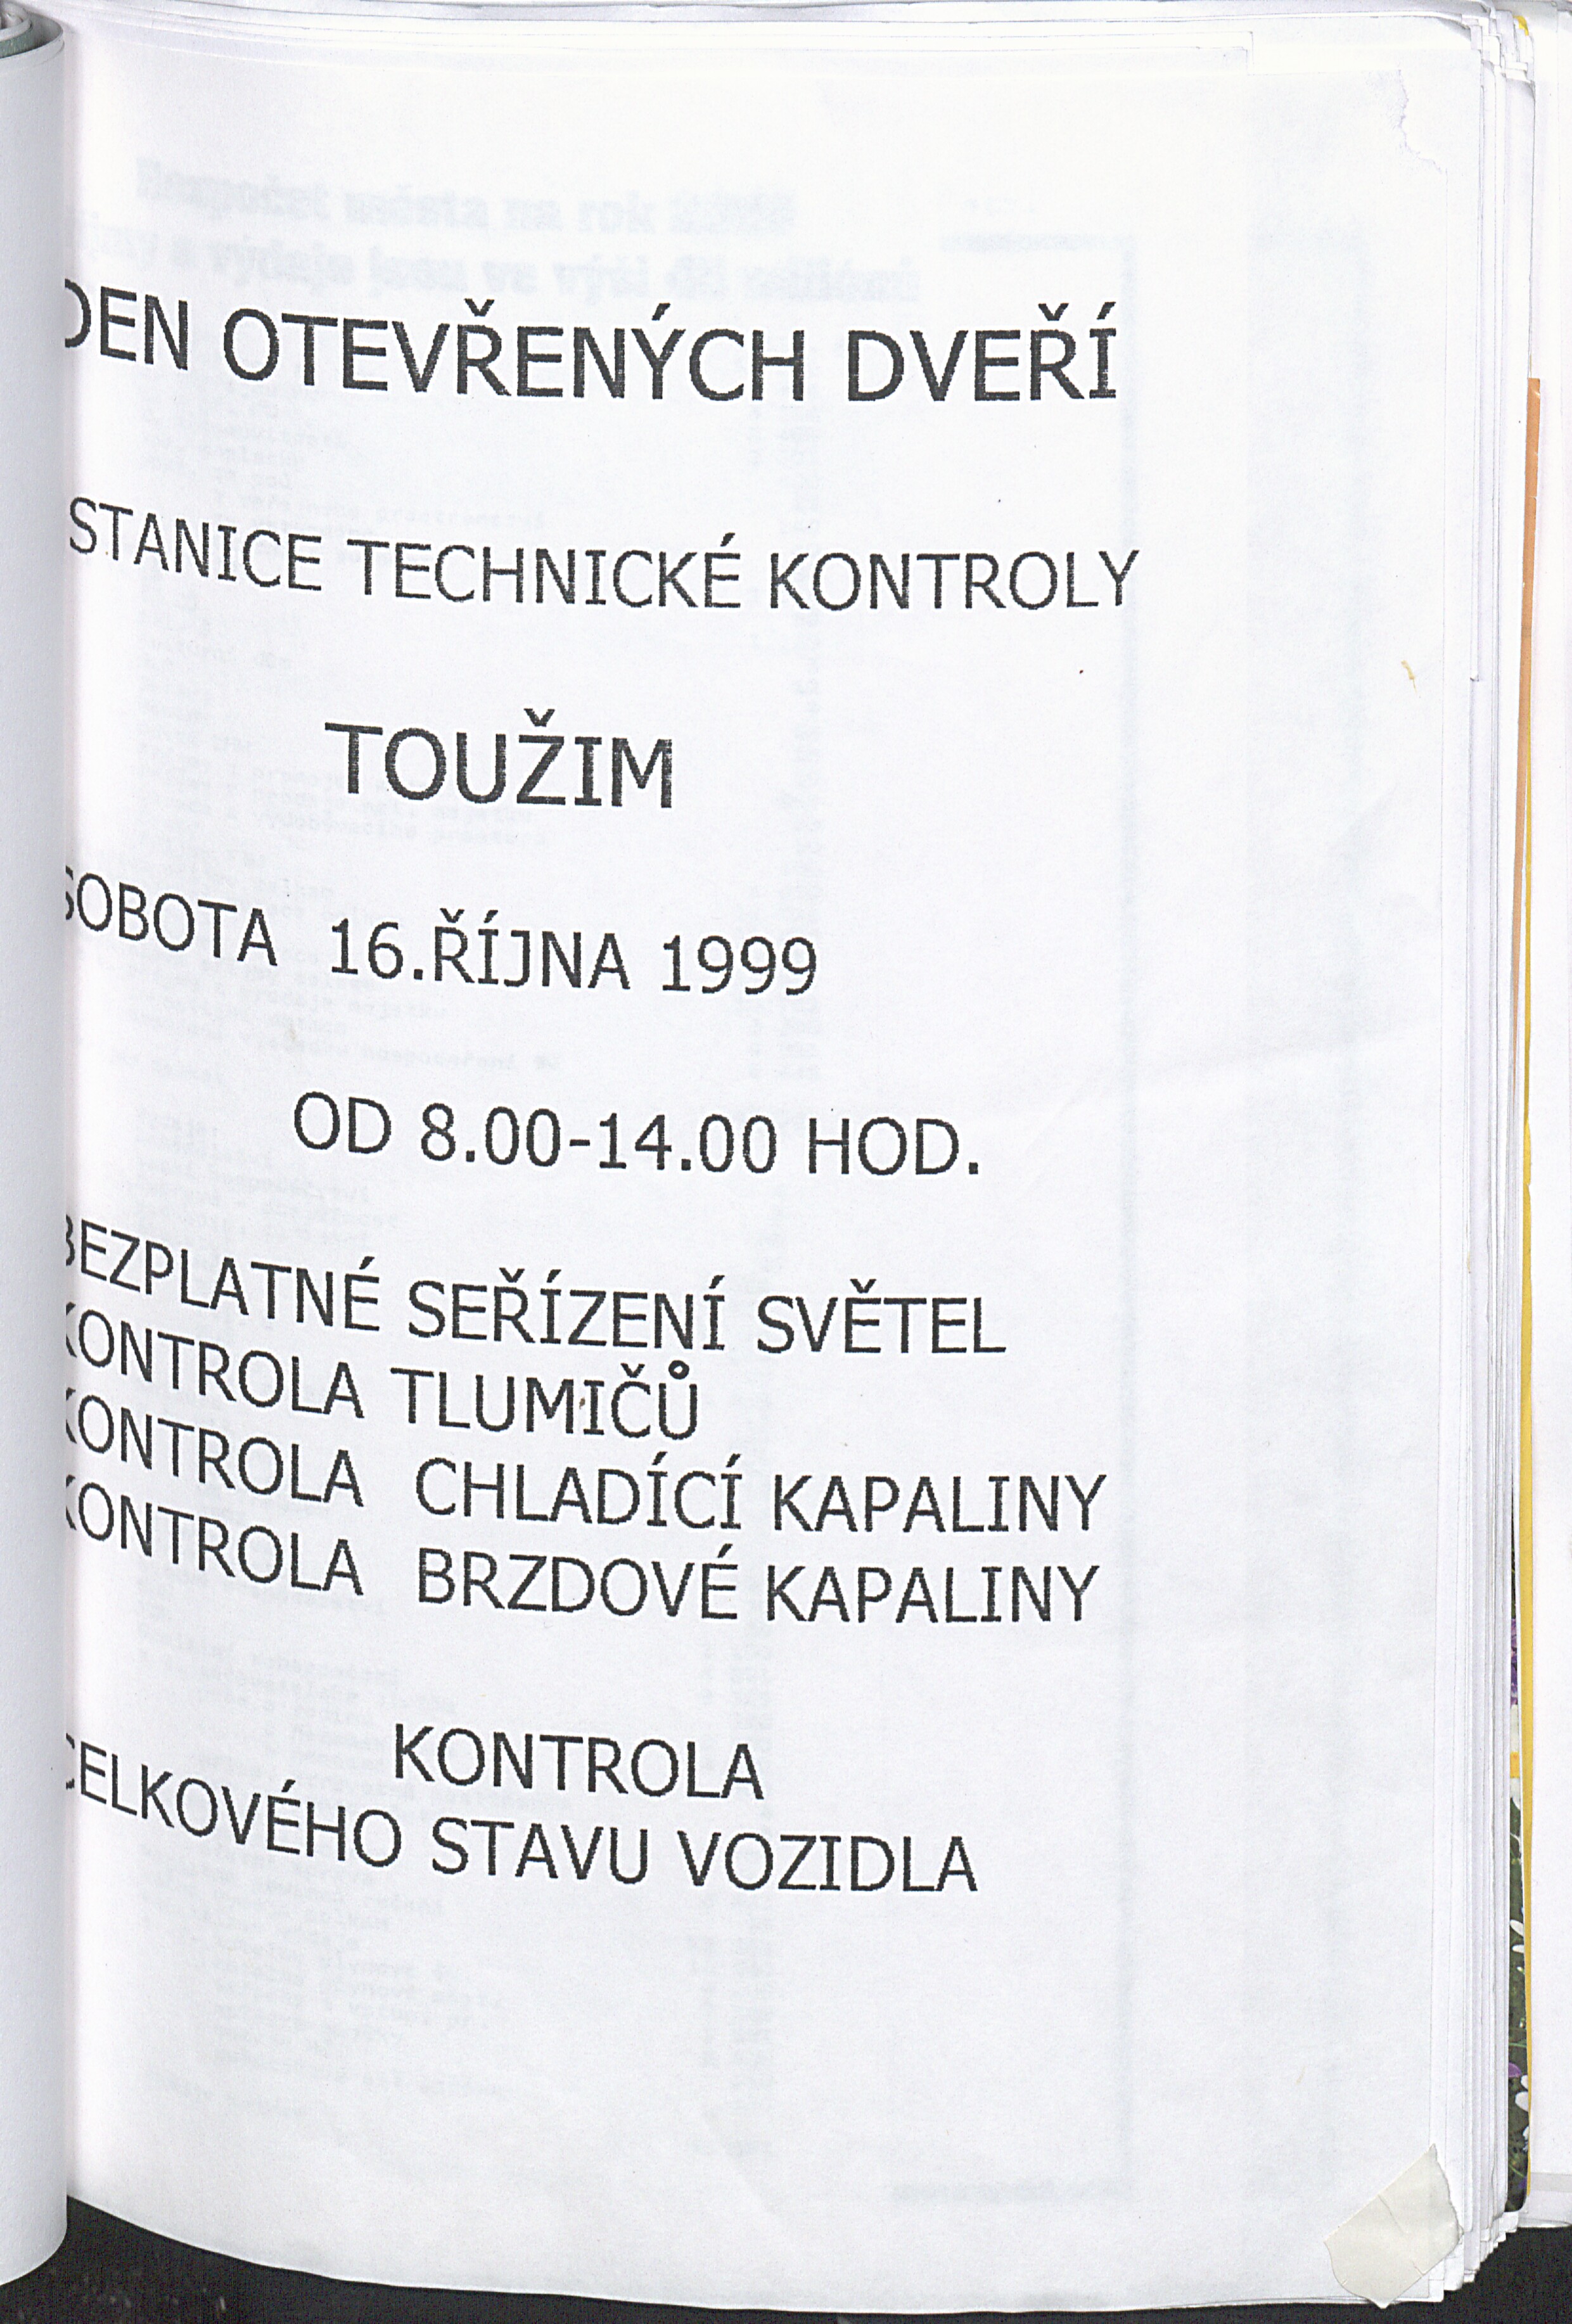 71. soap-kv_01822_mesto-touzim-priohy-1997-2000_0720